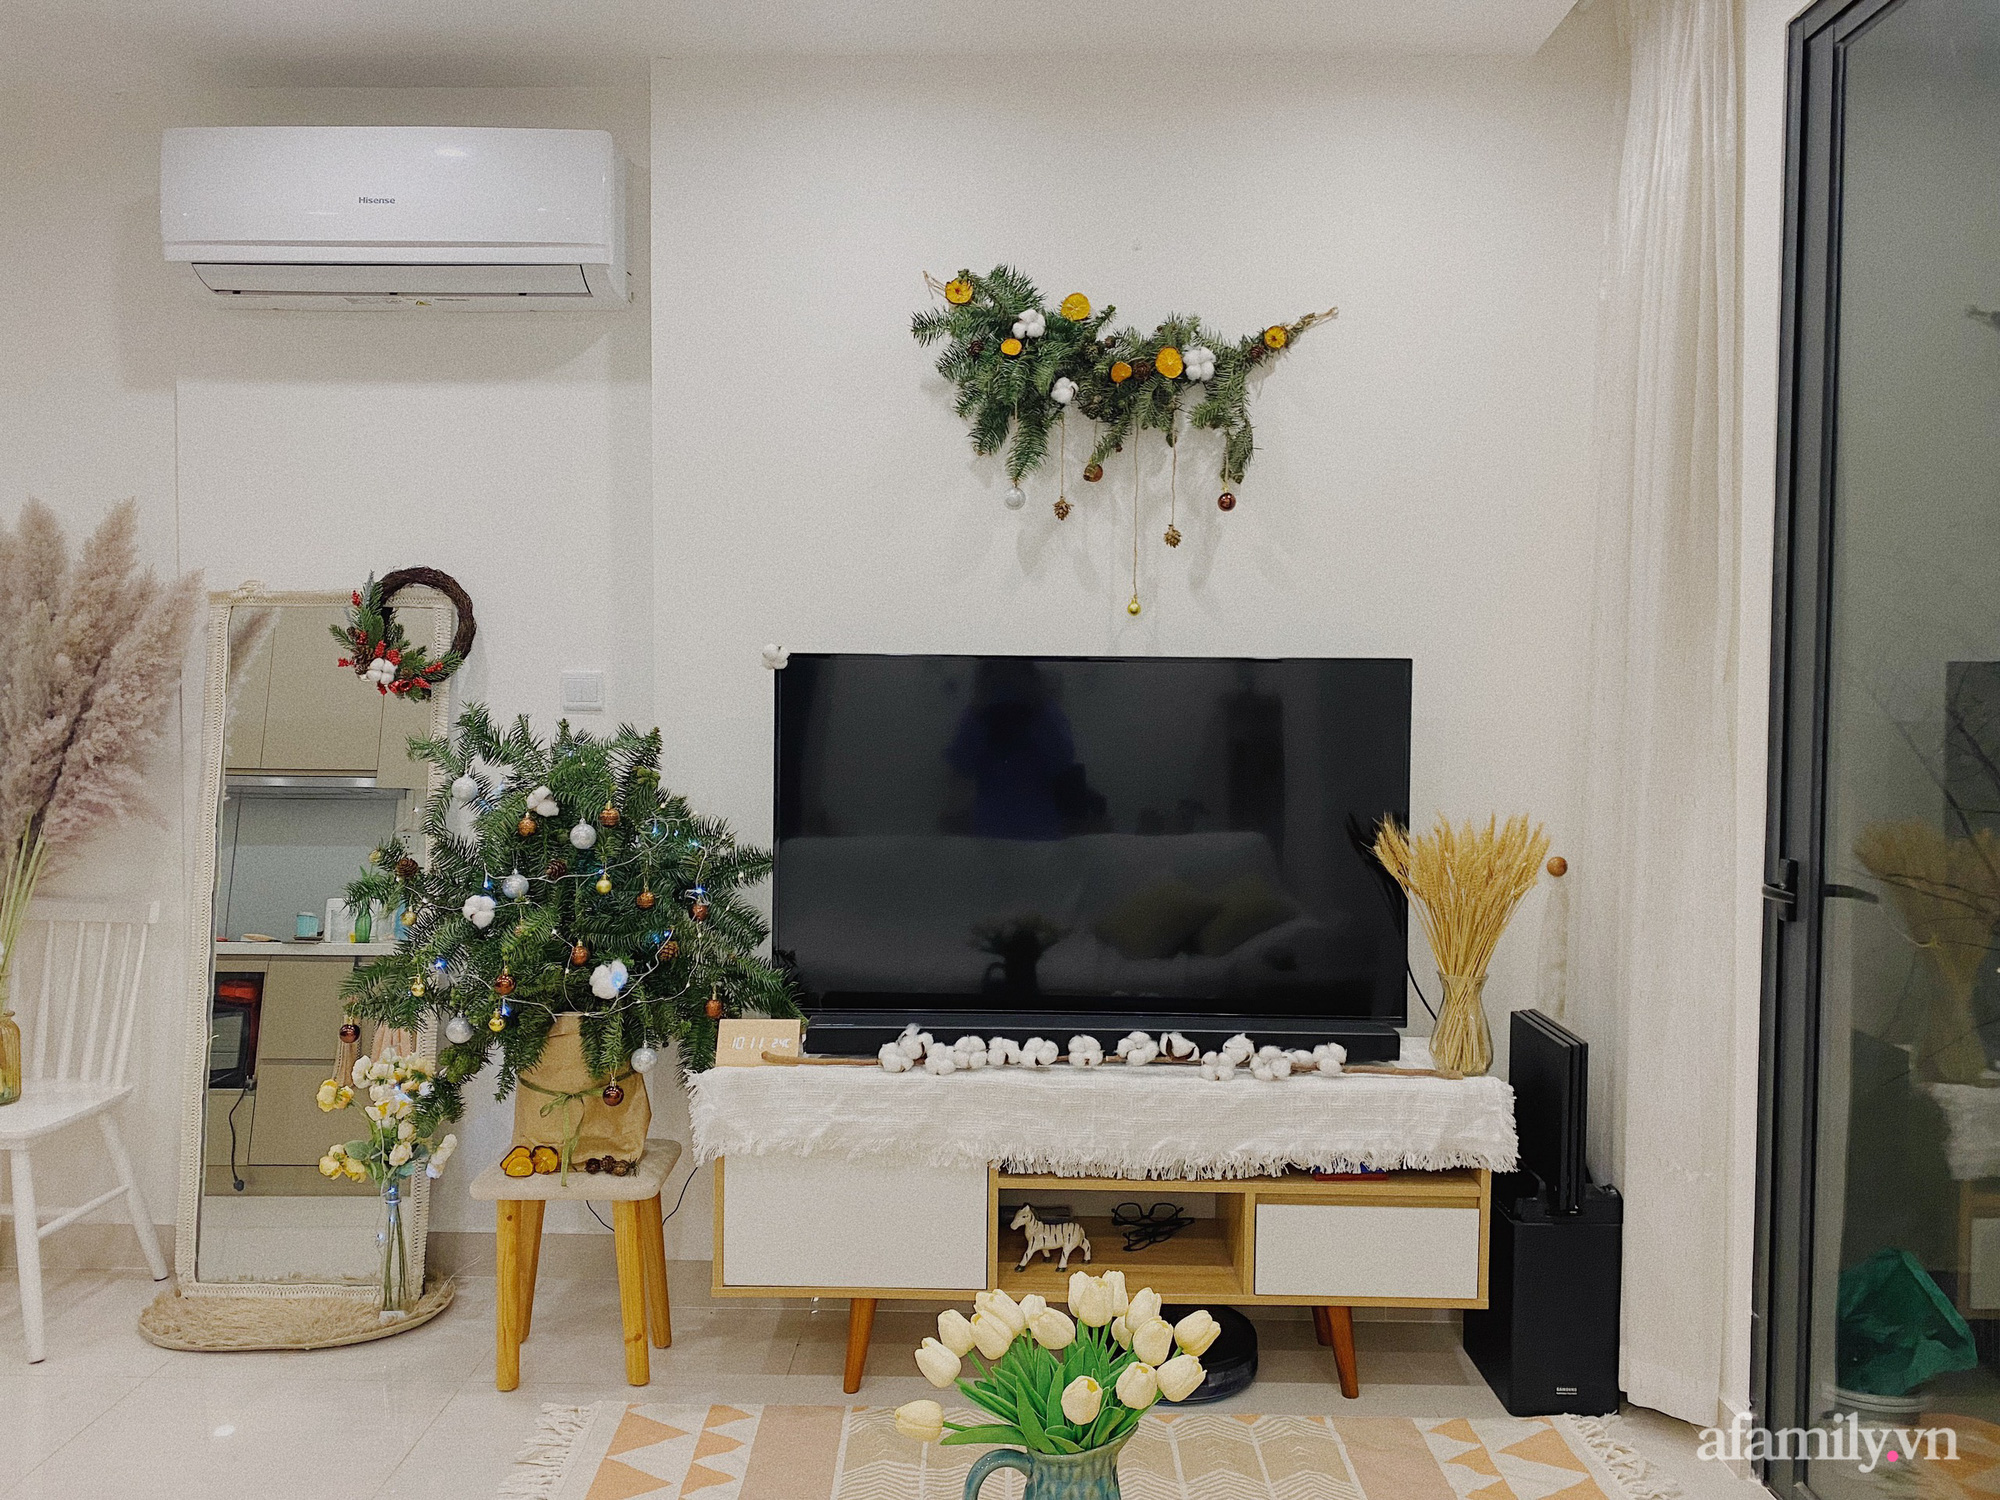 Chỉ bỏ ra hơn 100k mua cành thông, cô gái Hà Nội tận dùng đồ đạc biến nhà thành studo chụp ảnh Giáng sinh siêu xinh xắn - Ảnh 5.